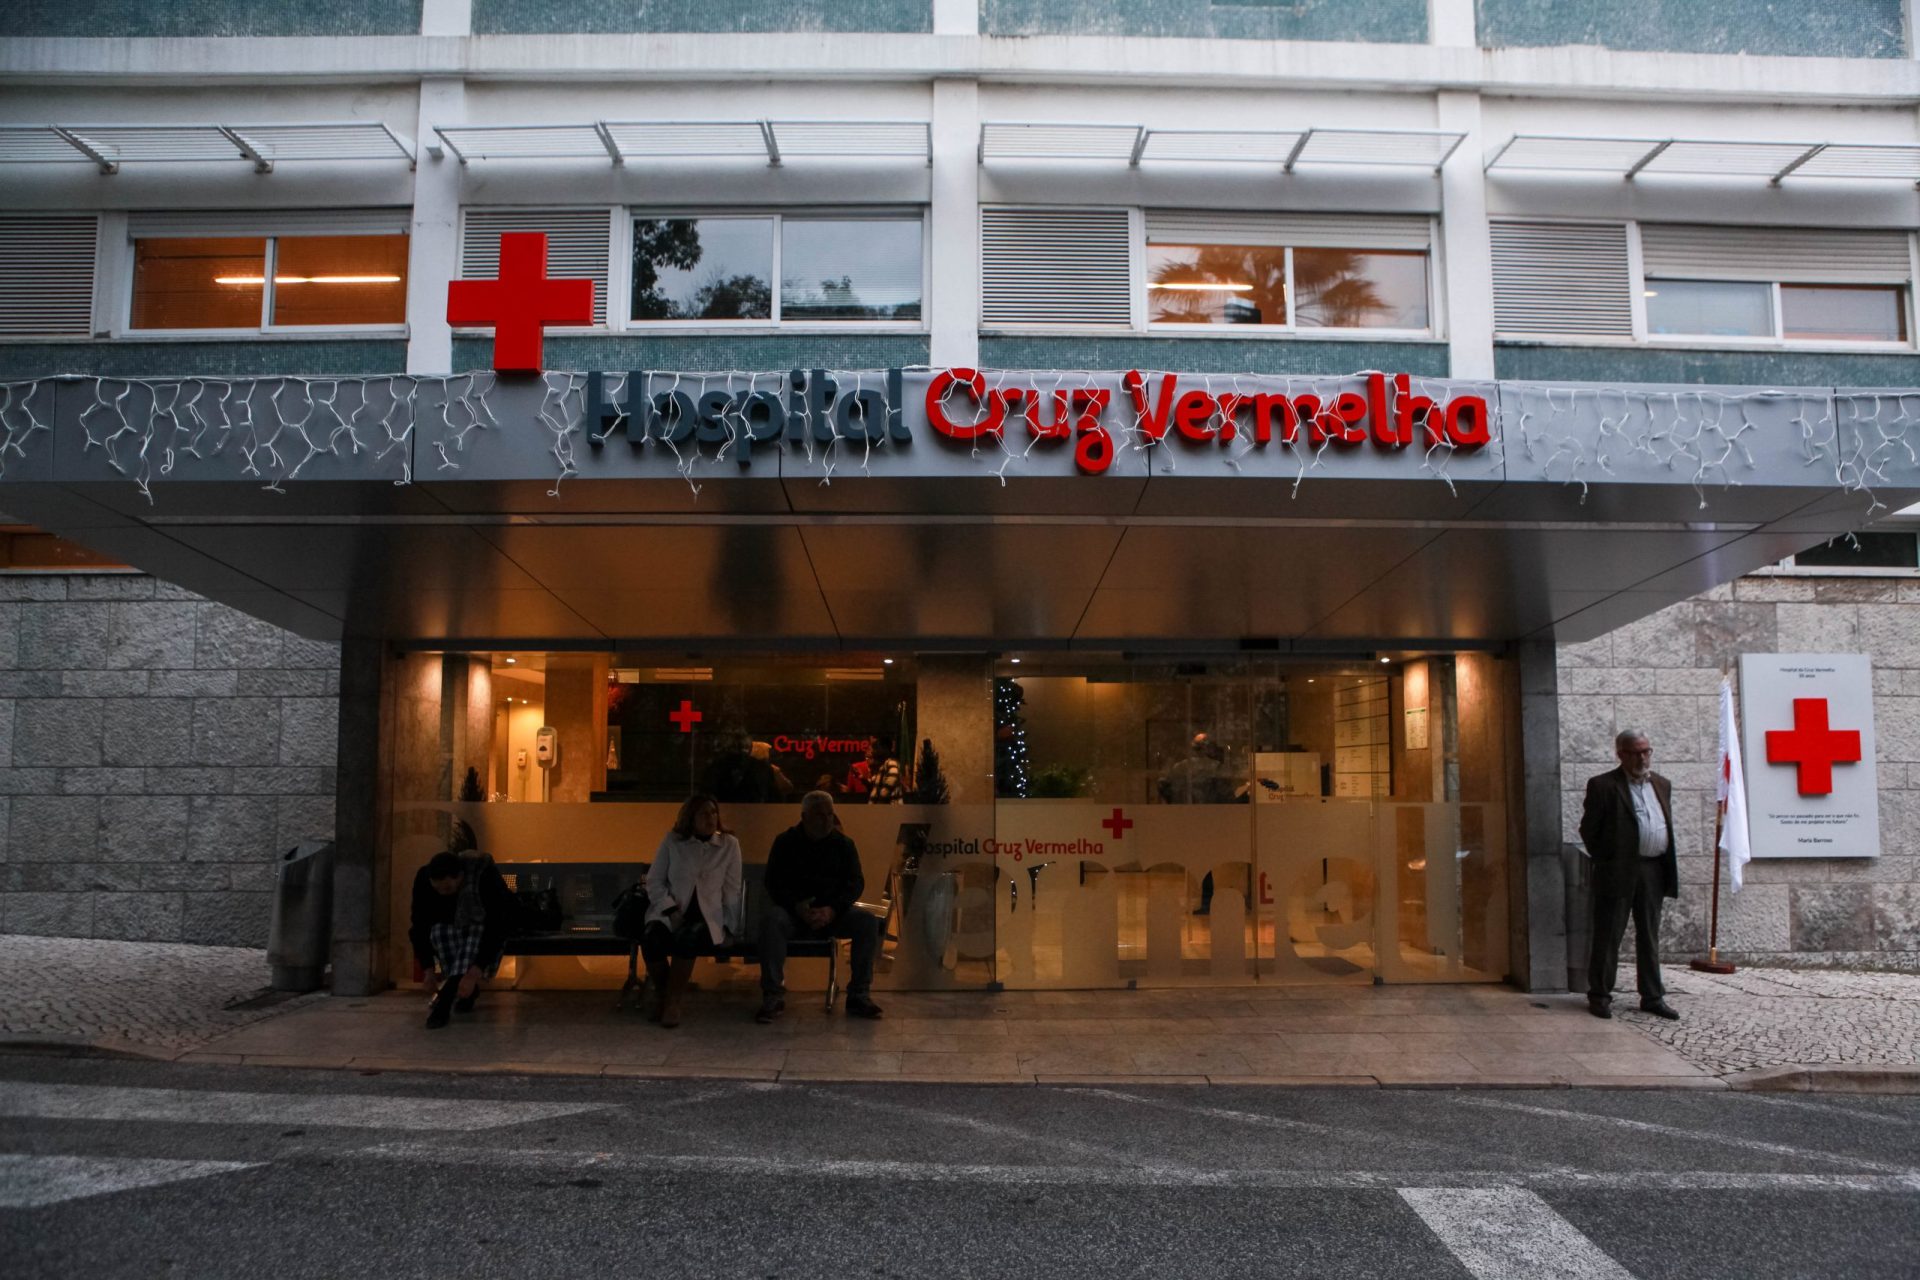 Trabalhadores do Hospital da Cruz Vermelha em greve esta quinta-feira